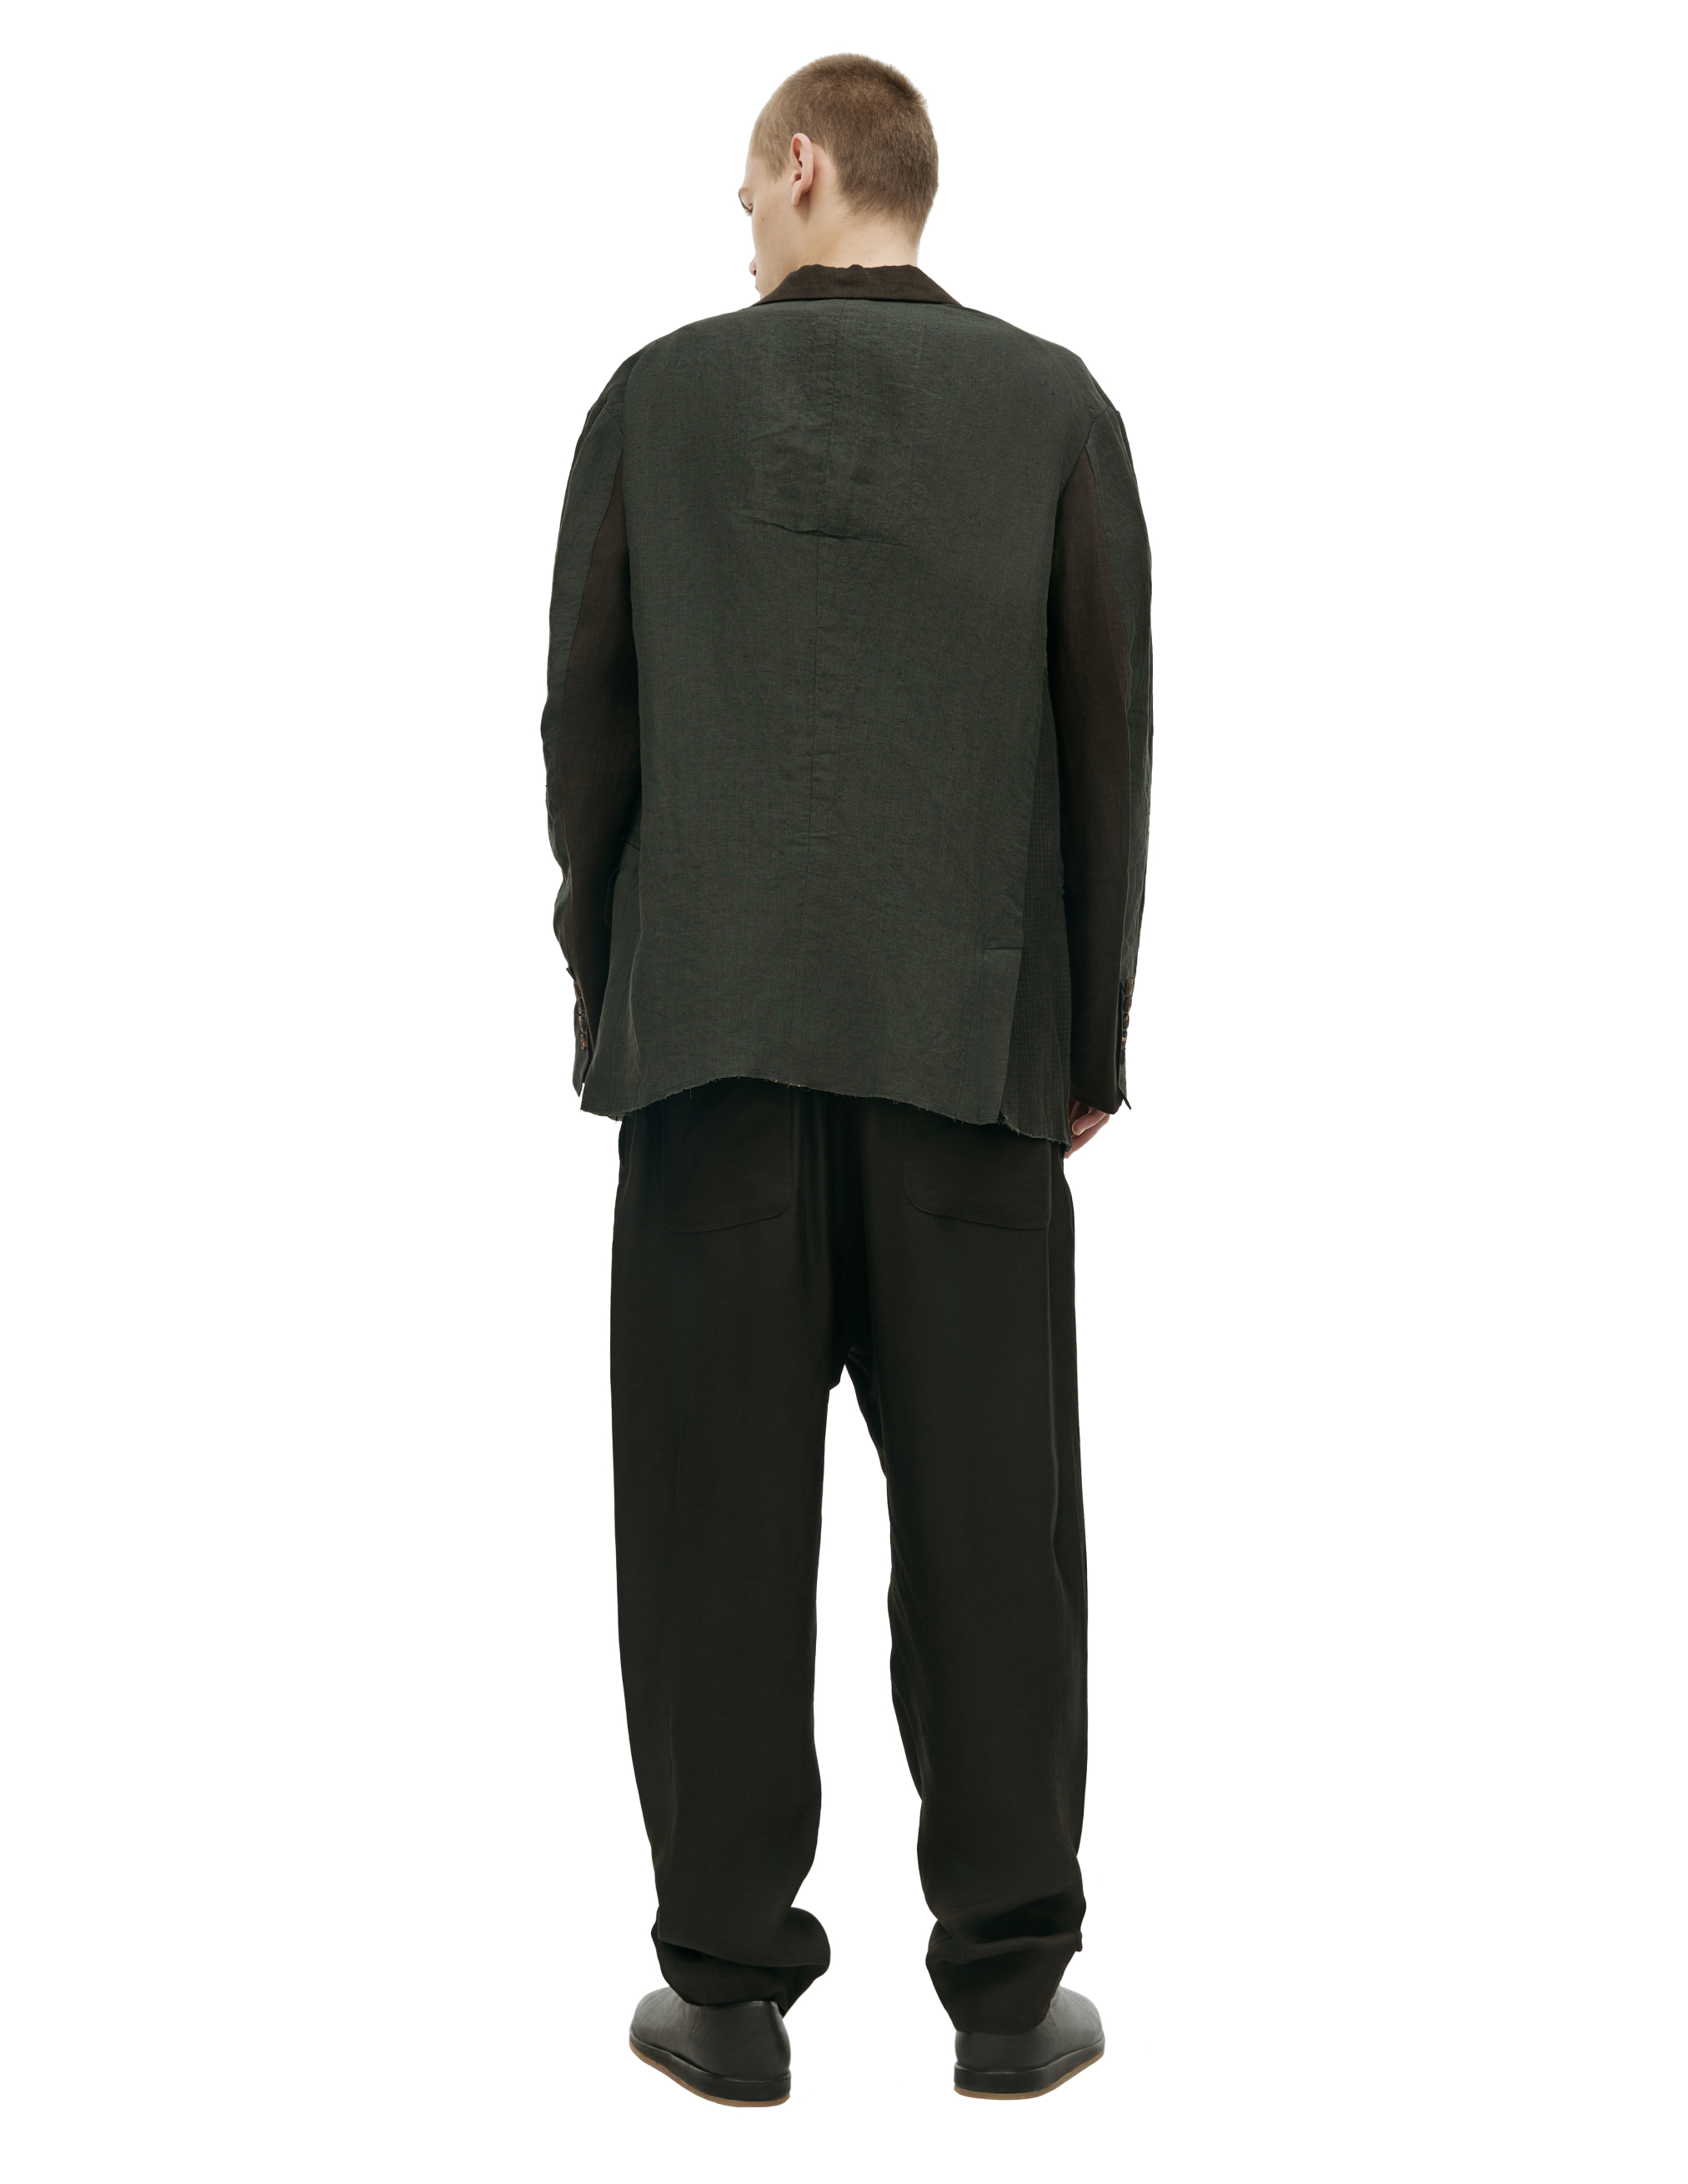 Льняной пиджак со вставками Ziggy Chen 0M2310905, размер 50 - фото 3